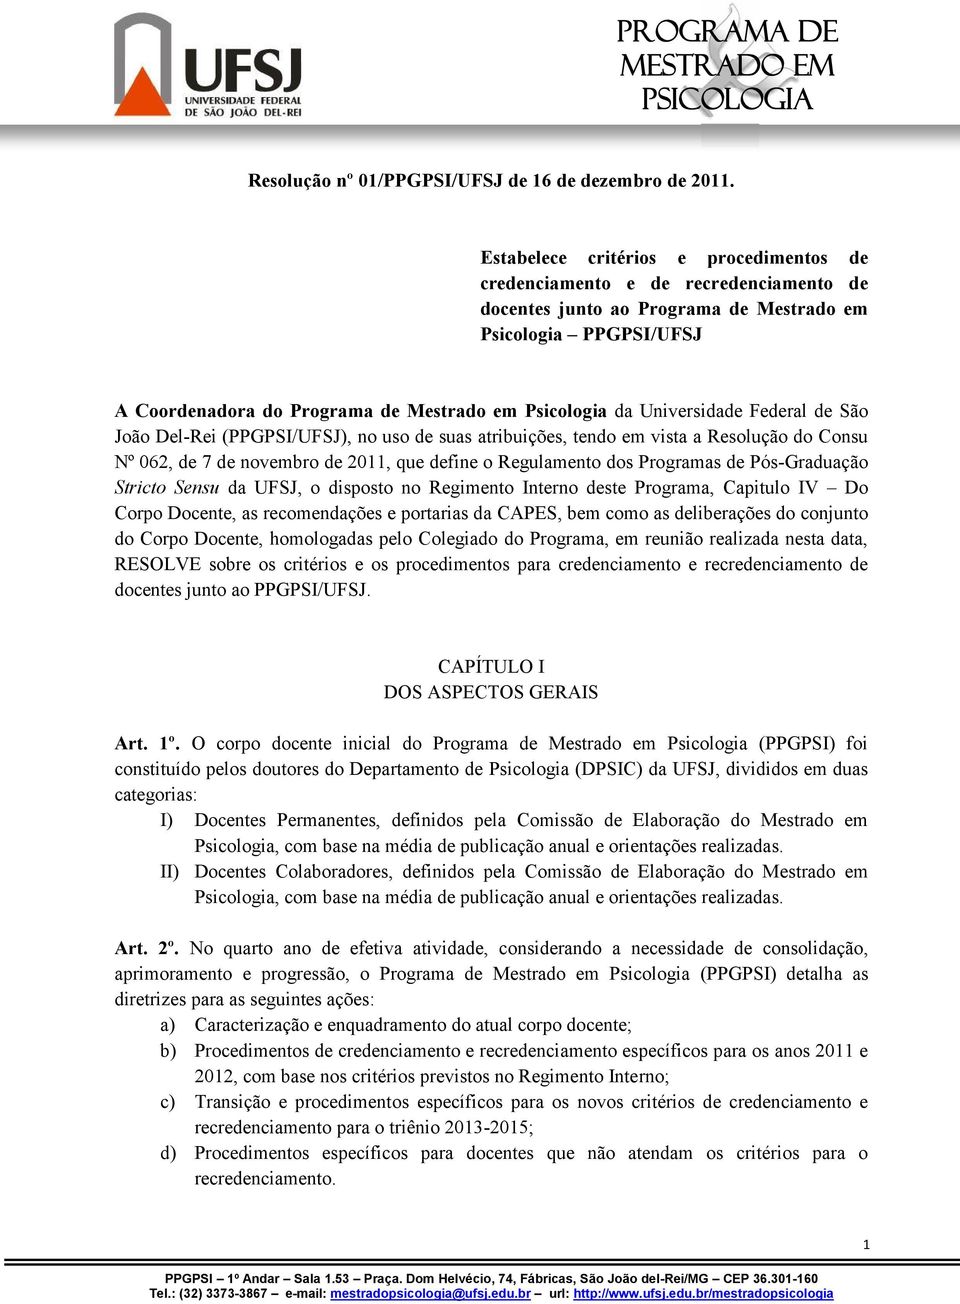 da Universidade Federal de São João Del-Rei (PPGPSI/UFSJ), no uso de suas atribuições, tendo em vista a Resolução do Consu Nº 062, de 7 de novembro de 2011, que define o Regulamento dos Programas de